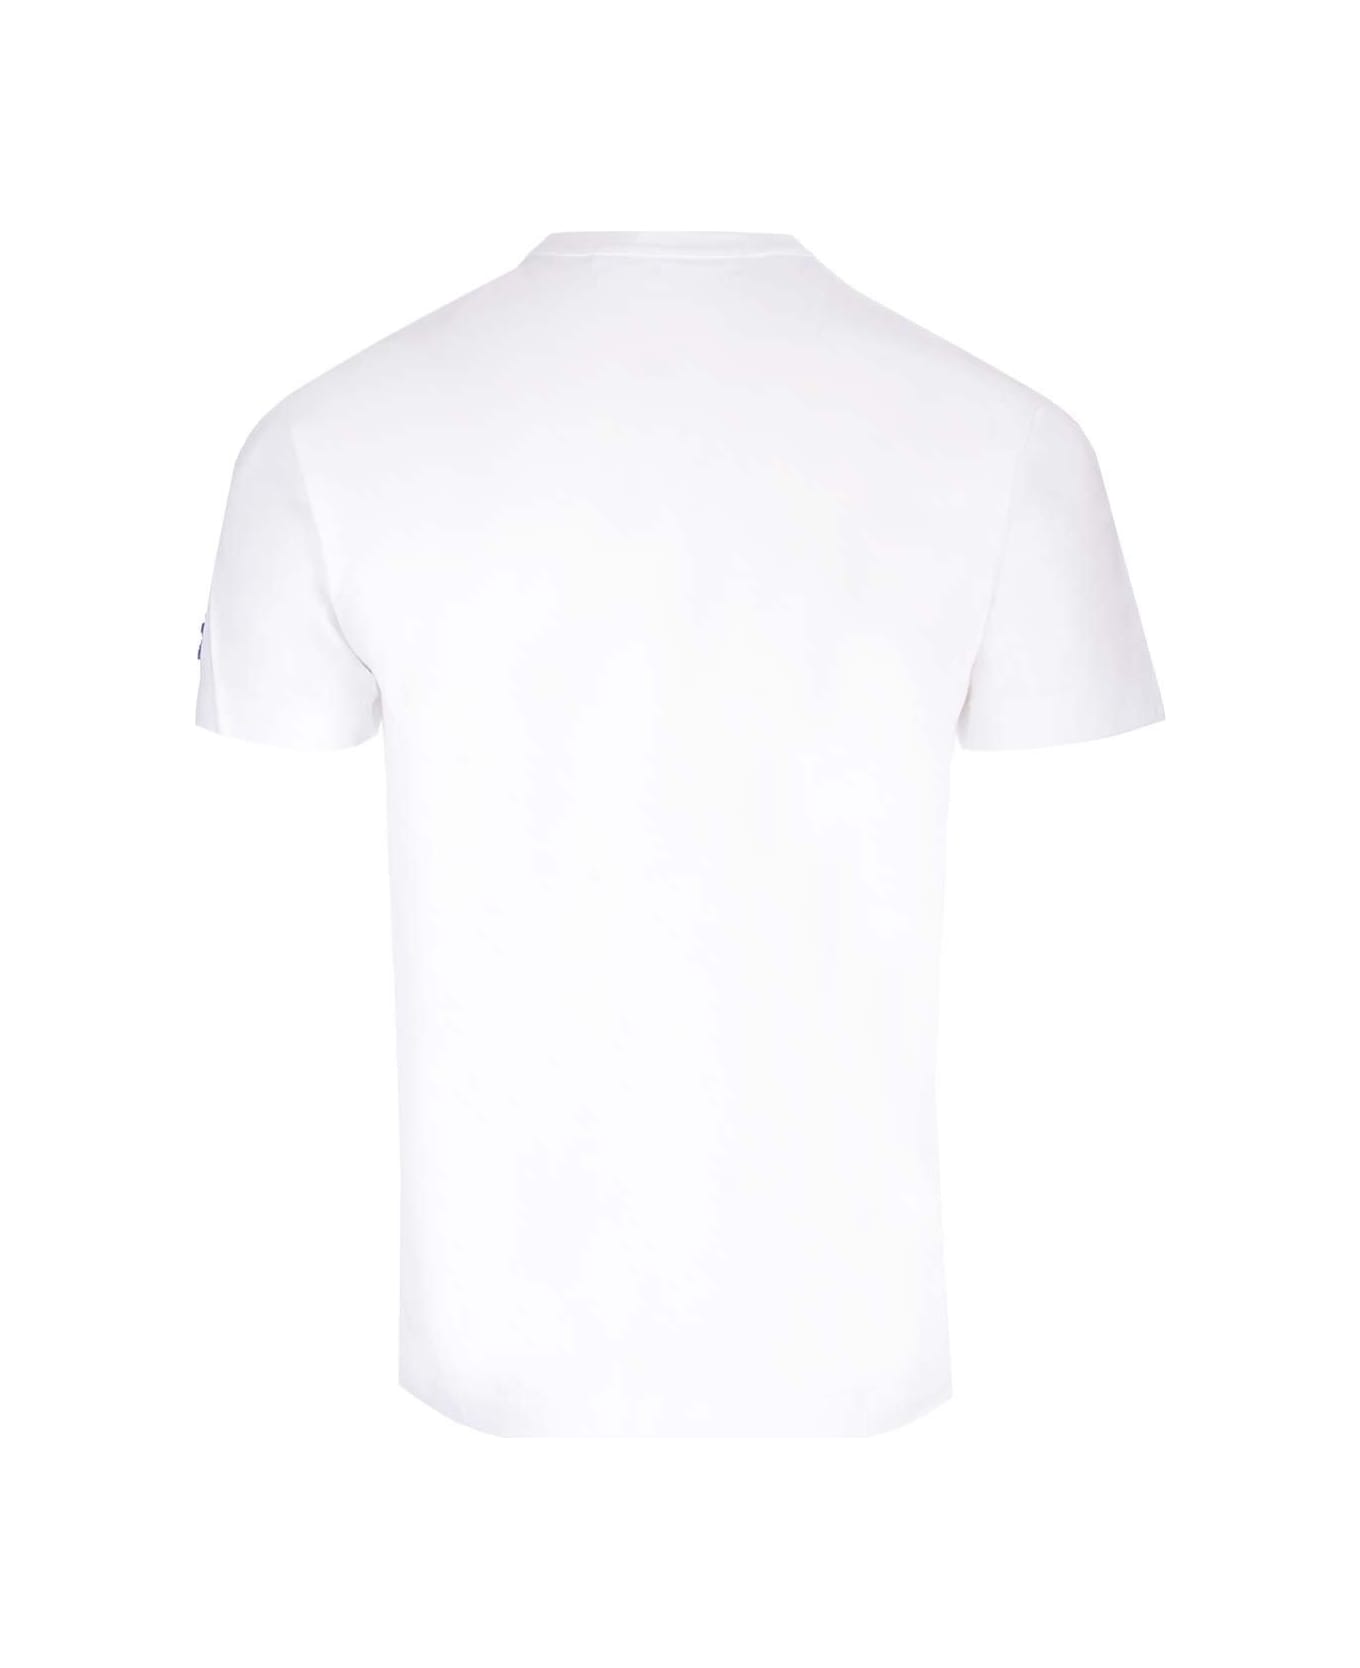 Comme des Garçons Play Logo Patch Crewneck T-shirt - Bianco シャツ